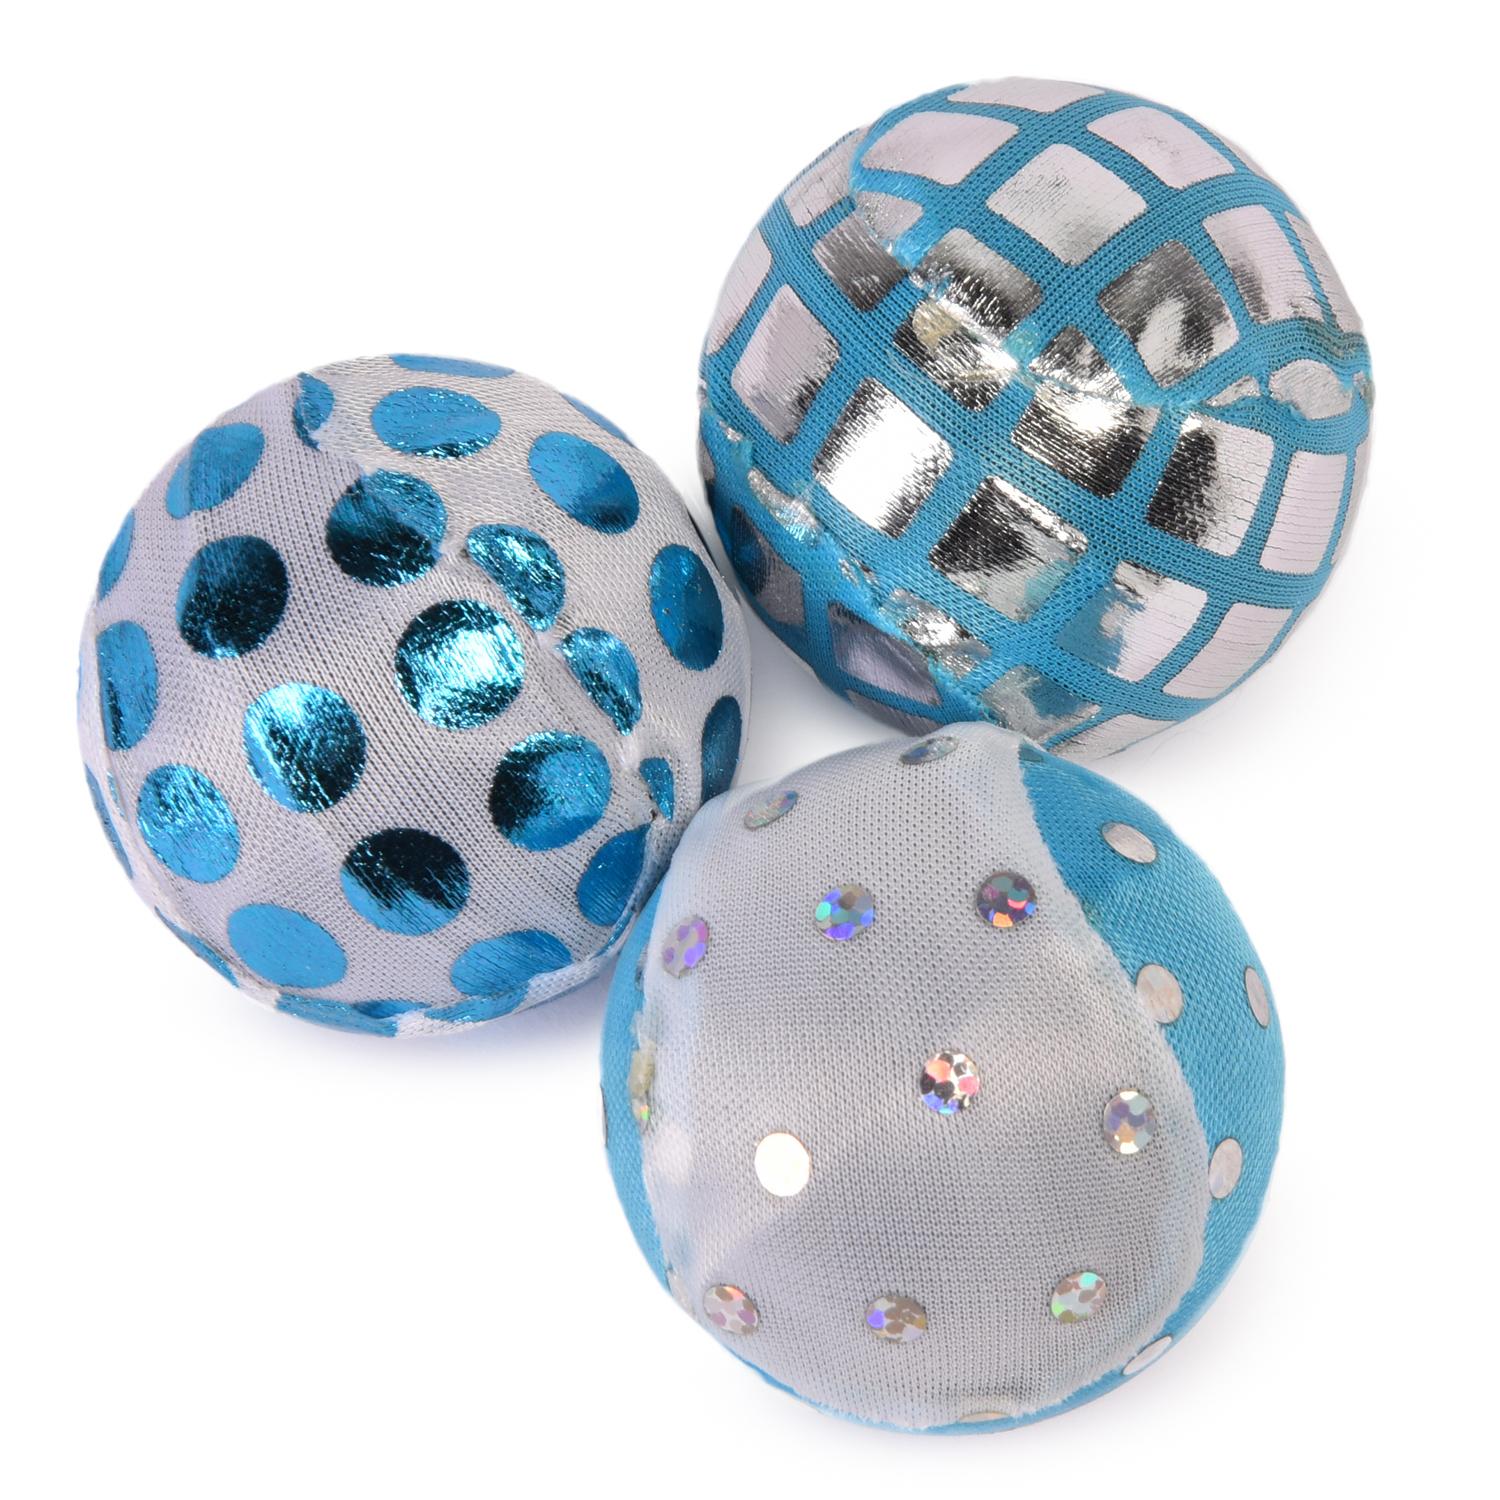 Мяч для кошек Nobby с блестками текстиль, в ассортименте, 4 см